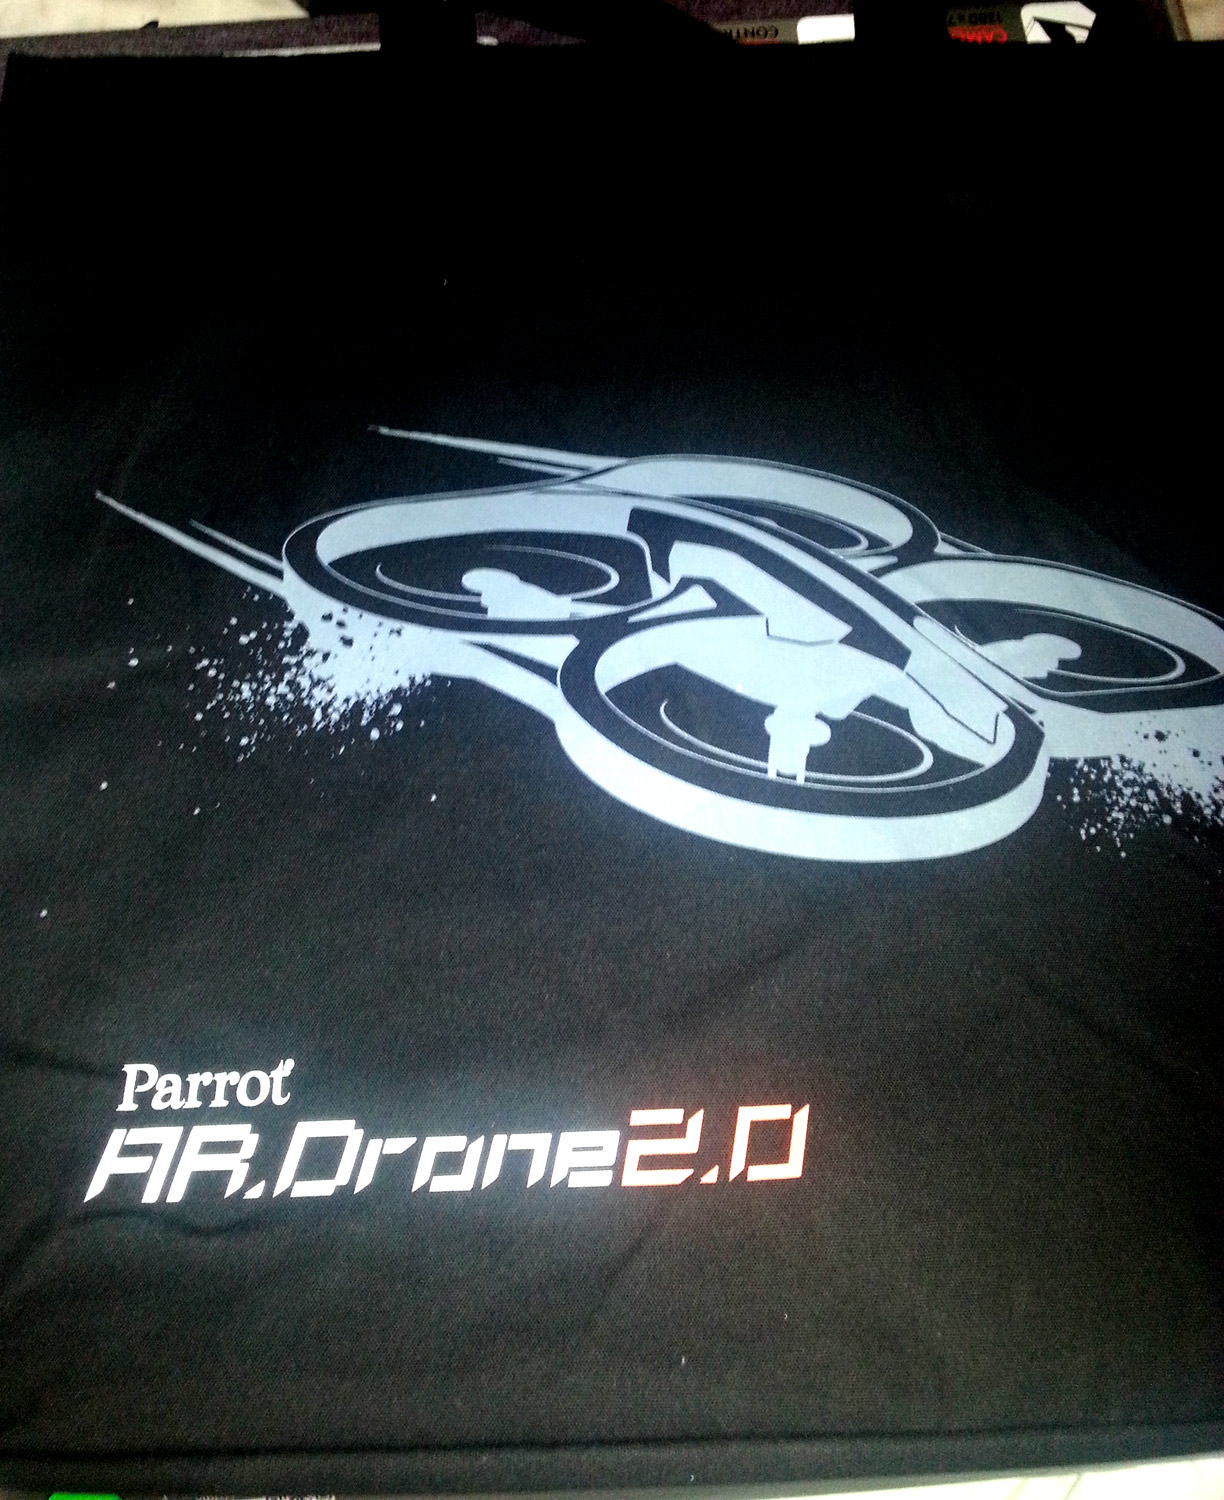  ###  <<<Parrot AR DRONE 2.0  (Ana Konu)>>> ###